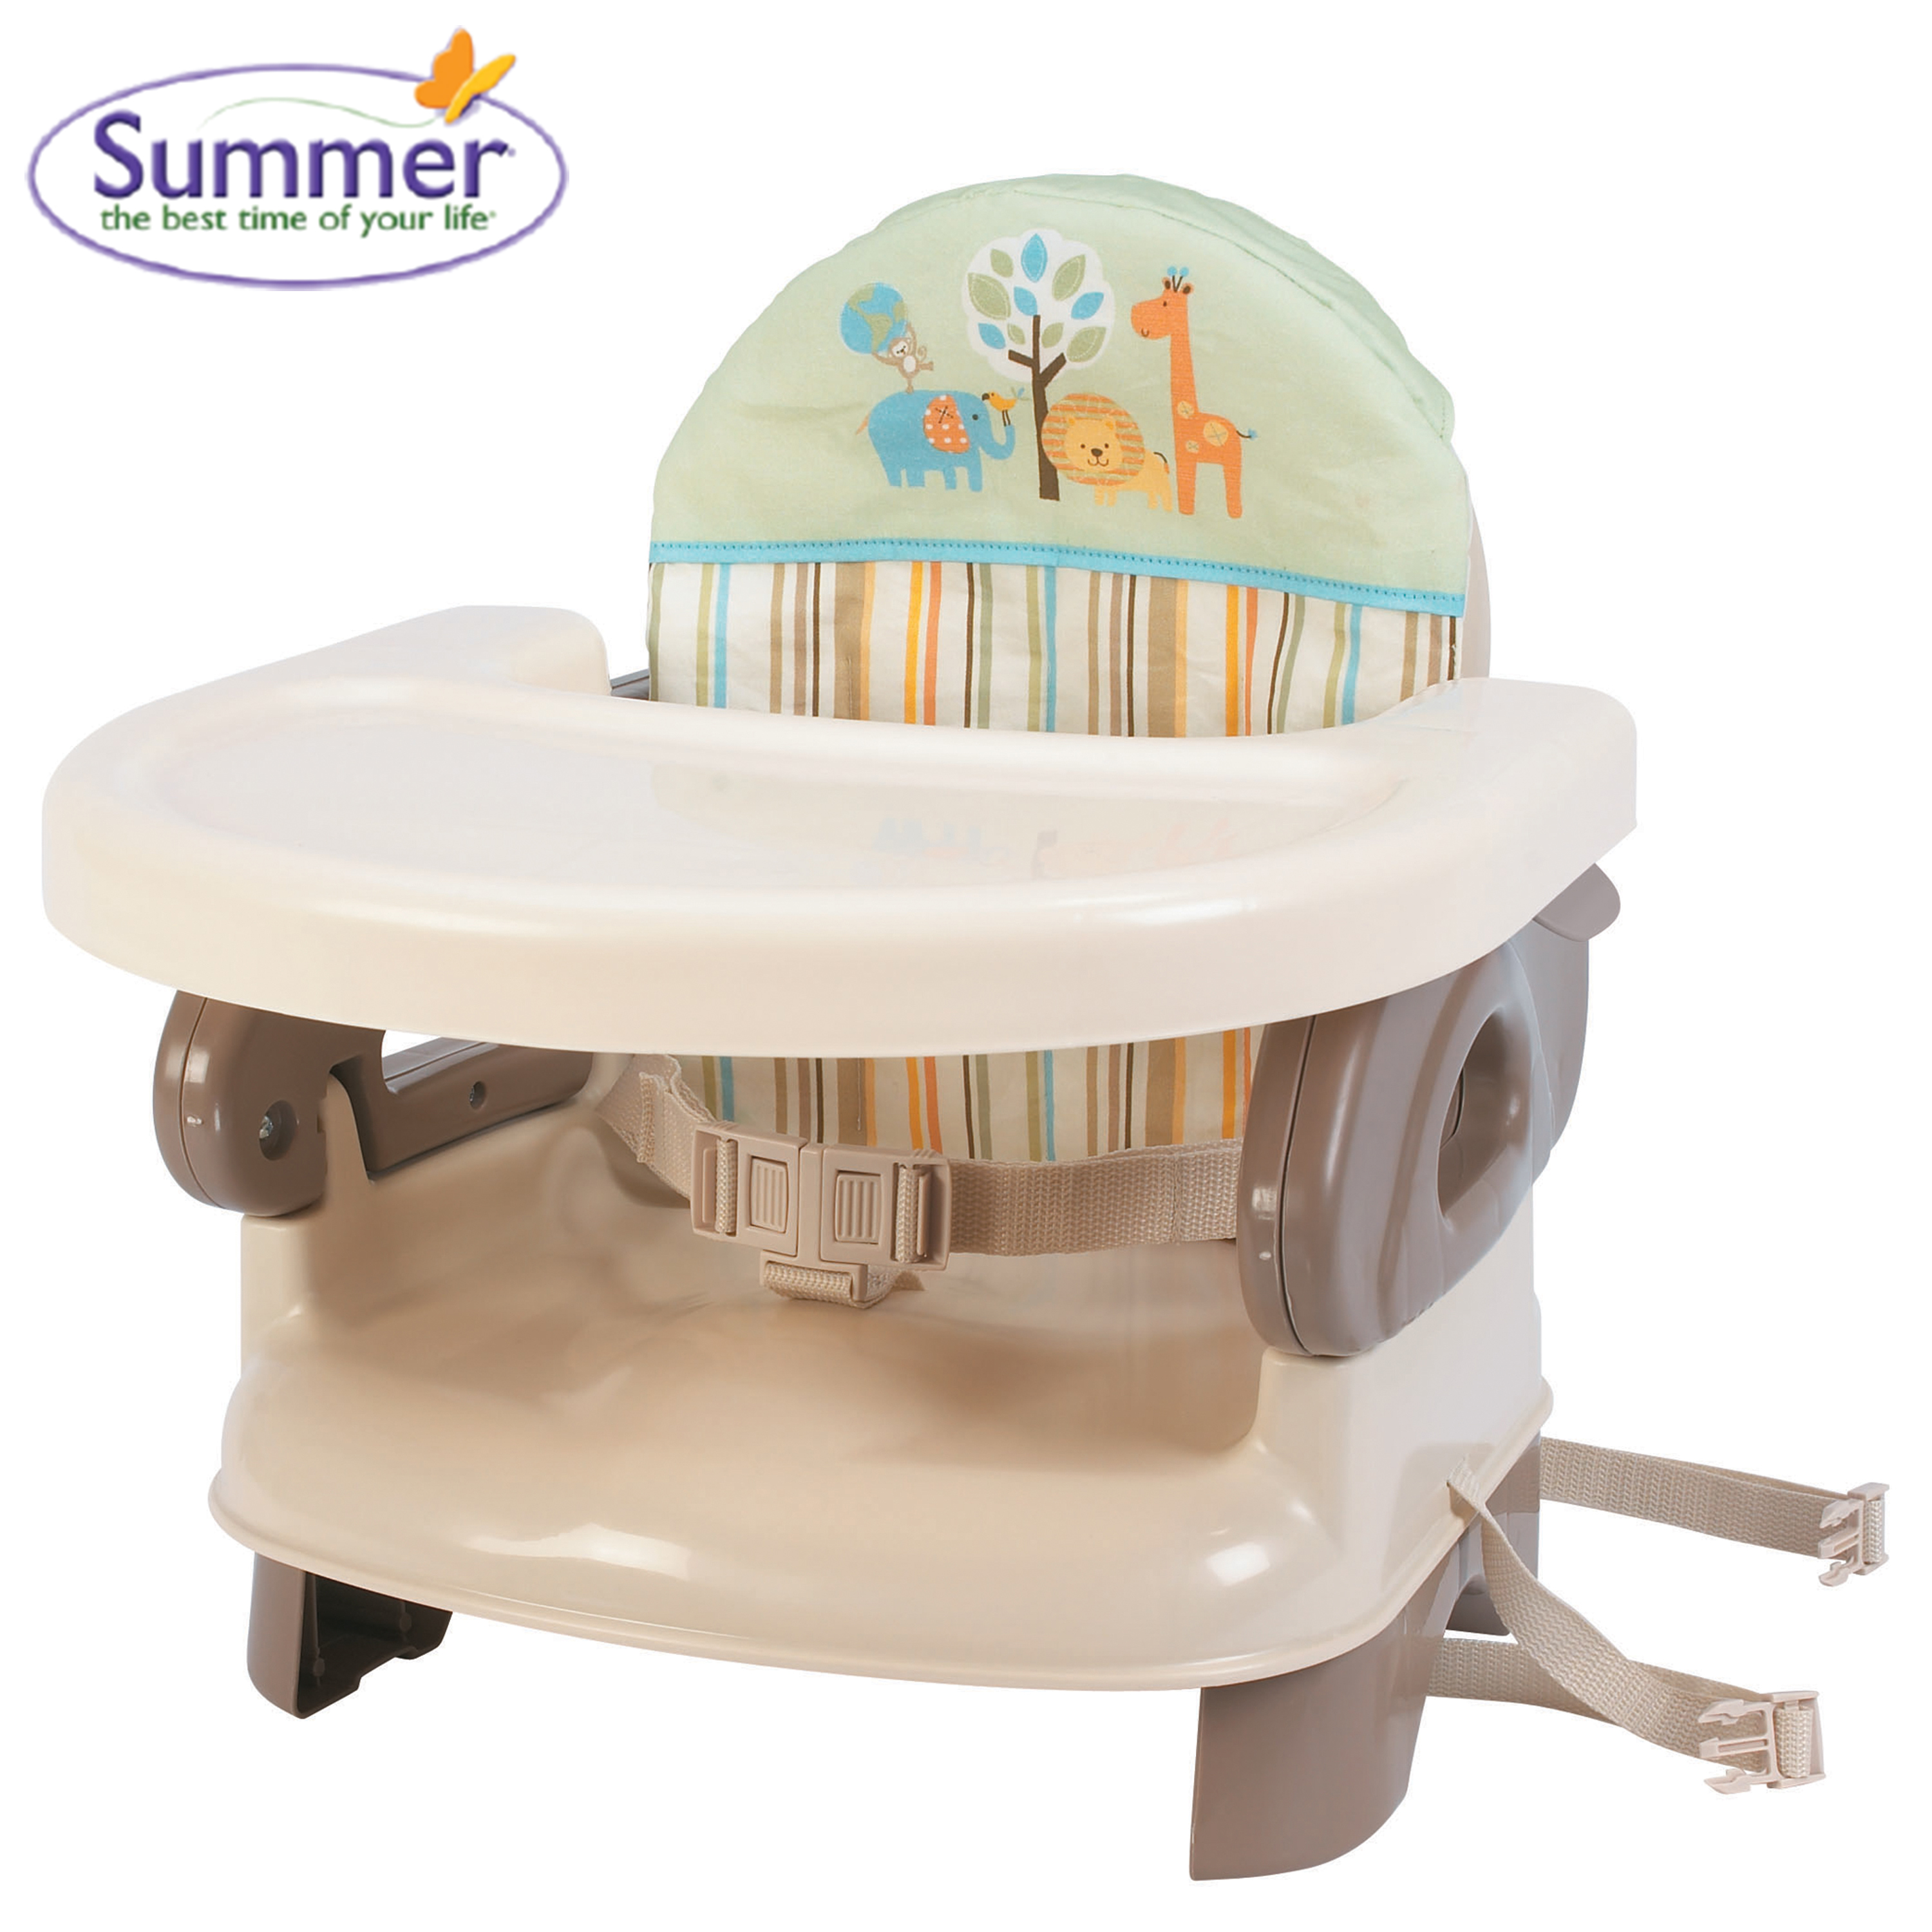 Ghế ăn Deluxe kẻ/ hồng Summer Infant cho bé (SM13060)